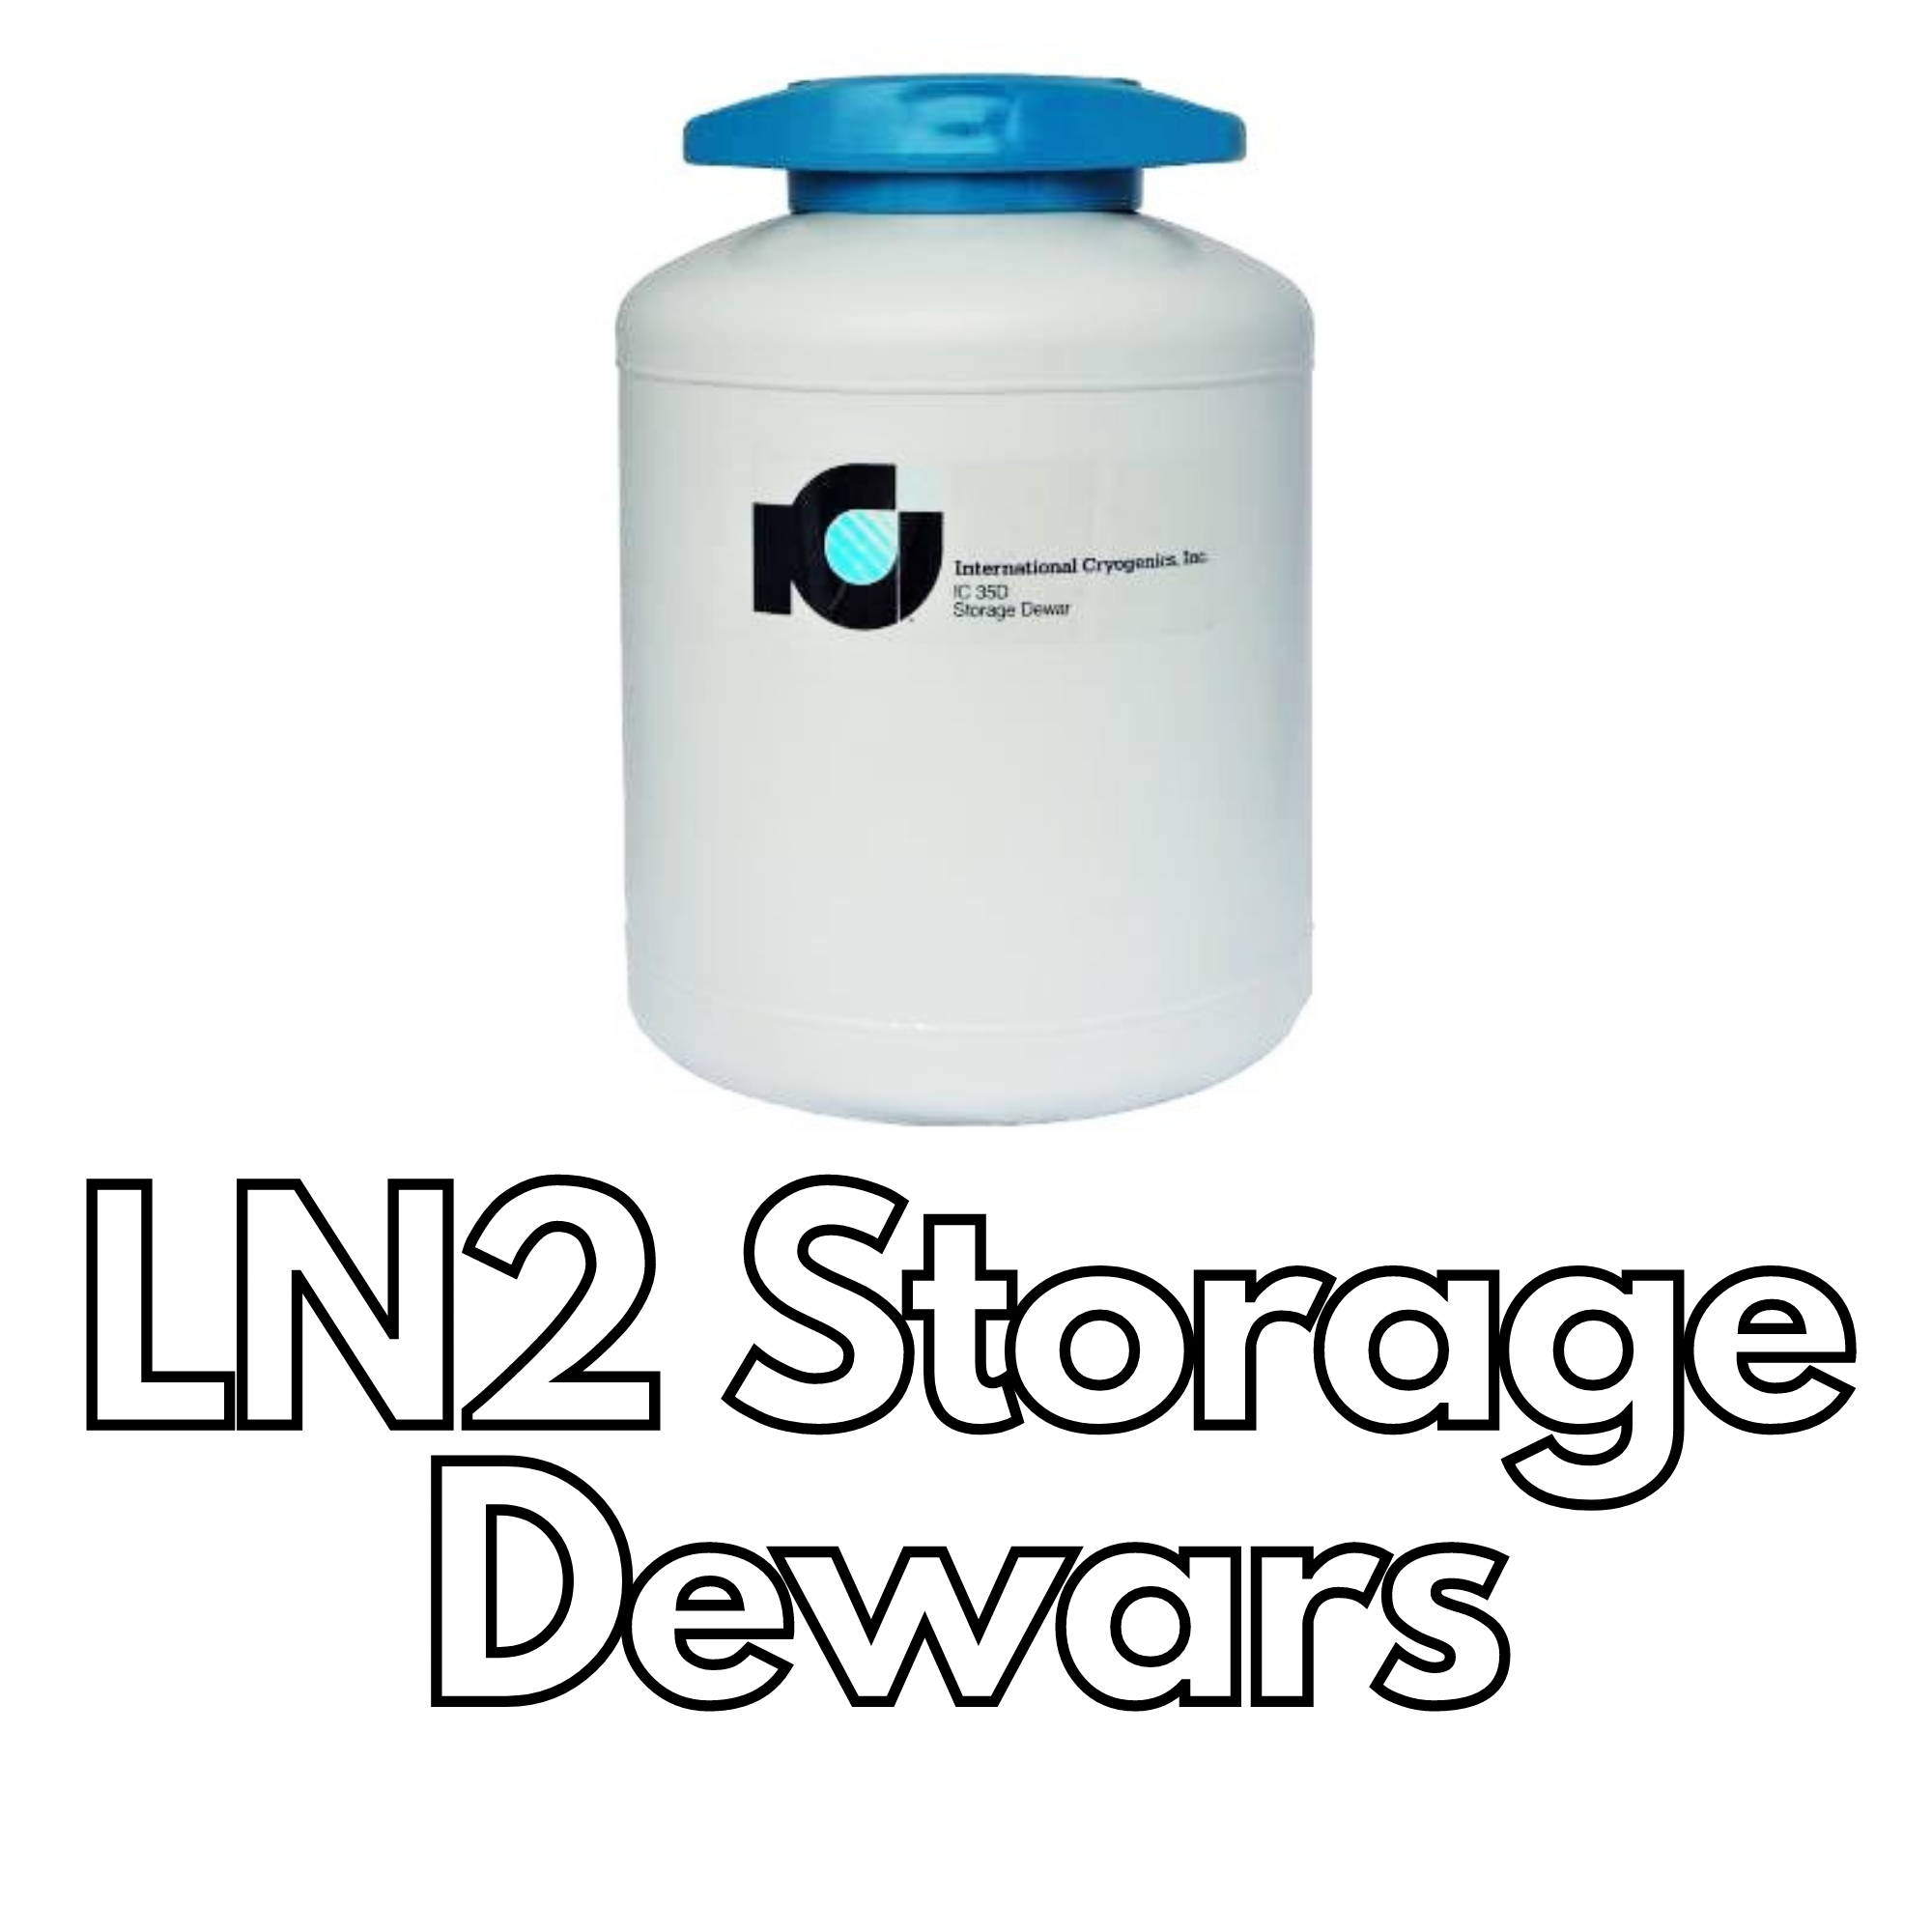 LN2 Storage Dewars